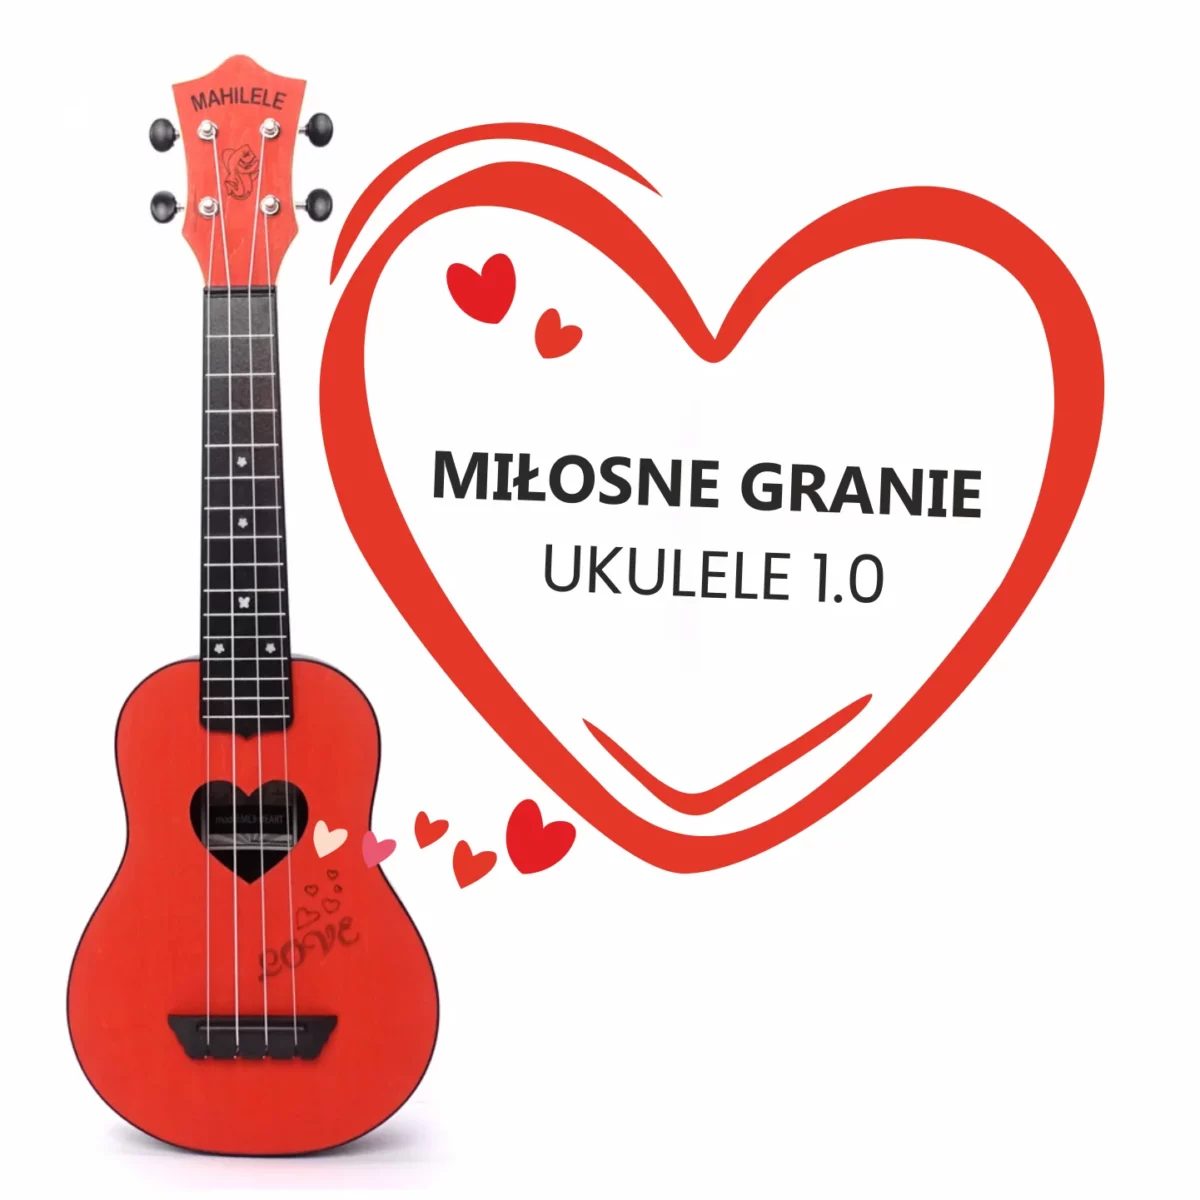 Miłosne granie 1.0 ukulele